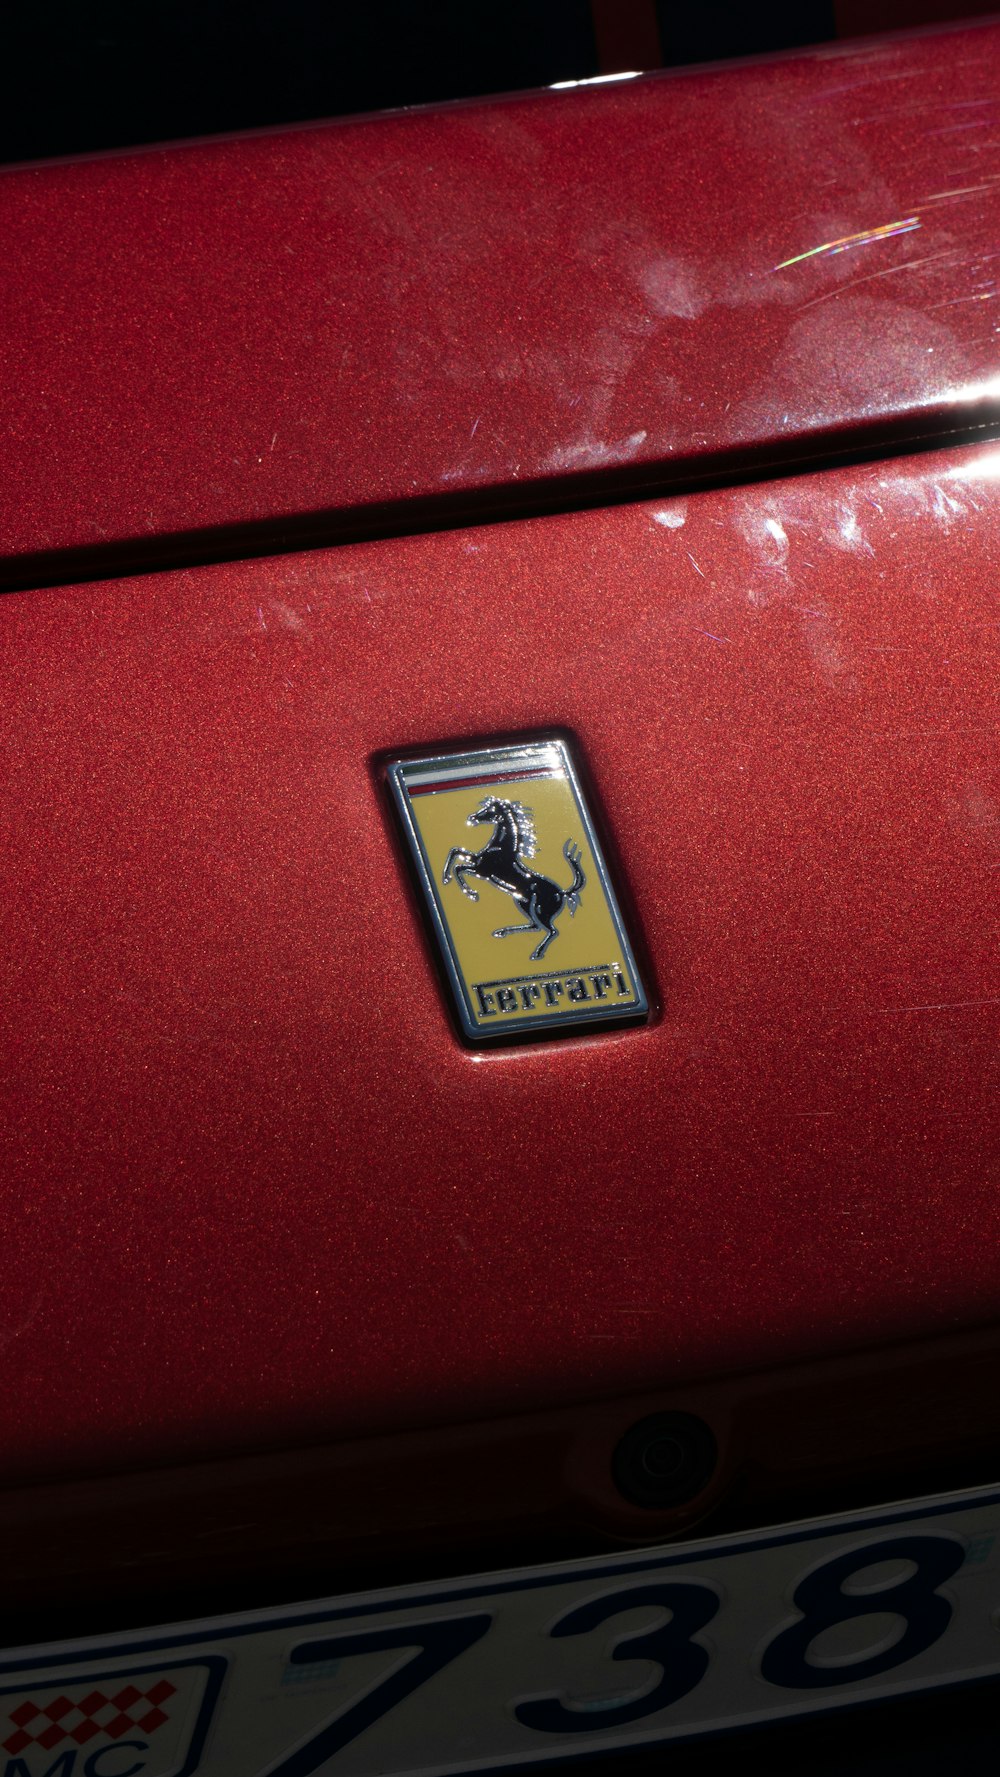 Ein rotes Auto mit einem Ferrari-Emblem darauf